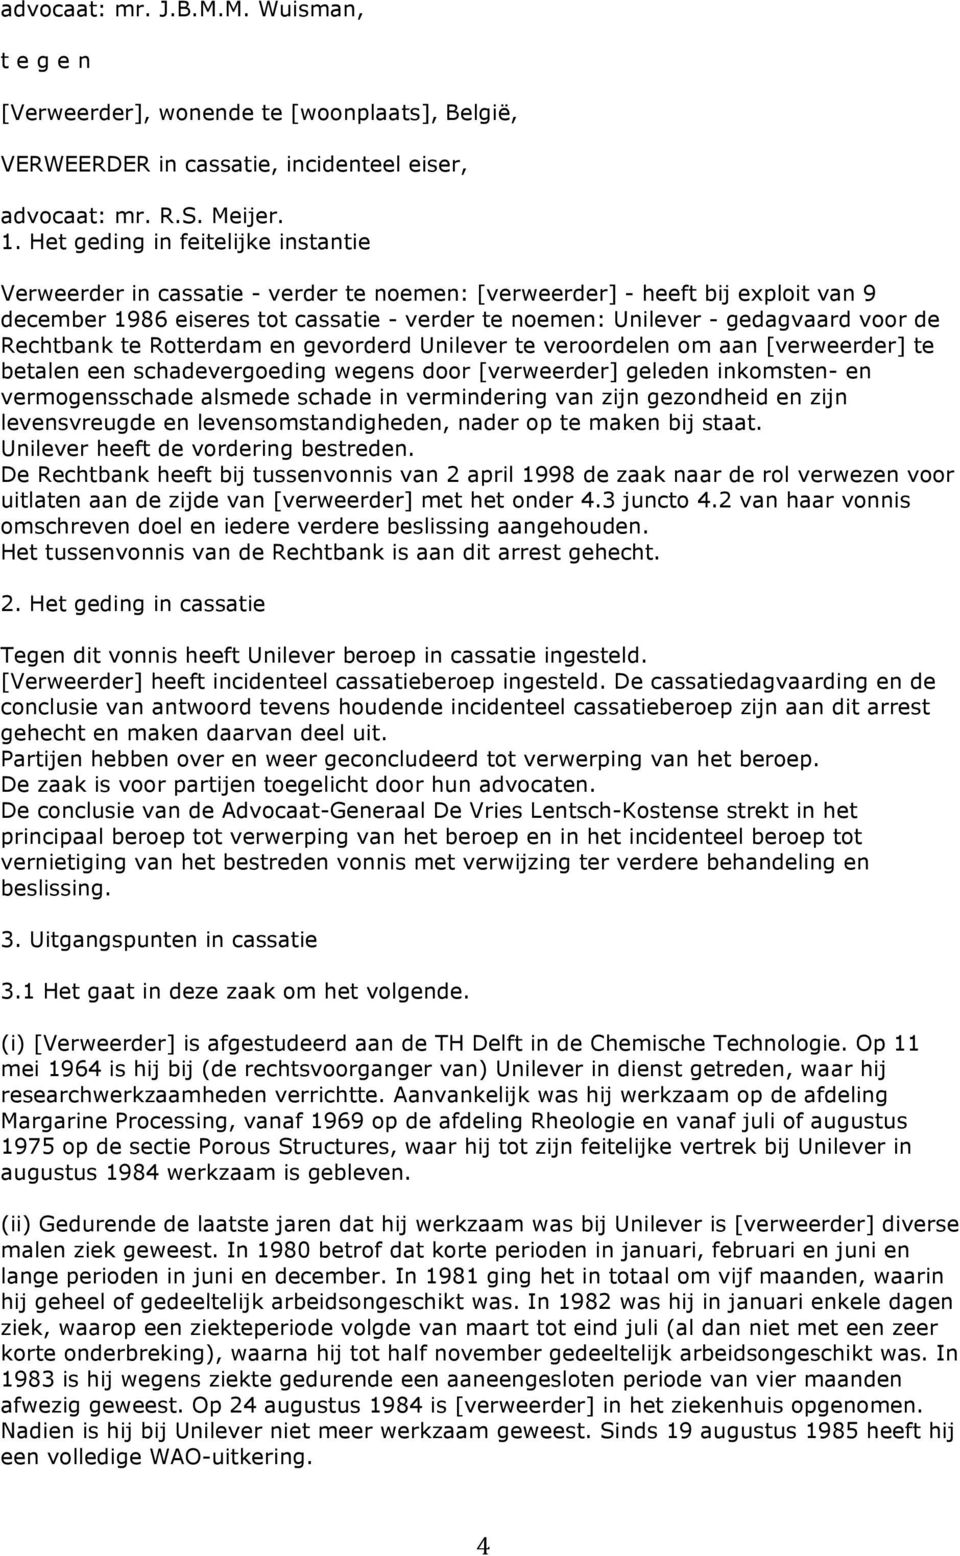 de Rechtbank te Rotterdam en gevorderd Unilever te veroordelen om aan [verweerder] te betalen een schadevergoeding wegens door [verweerder] geleden inkomsten- en vermogensschade alsmede schade in